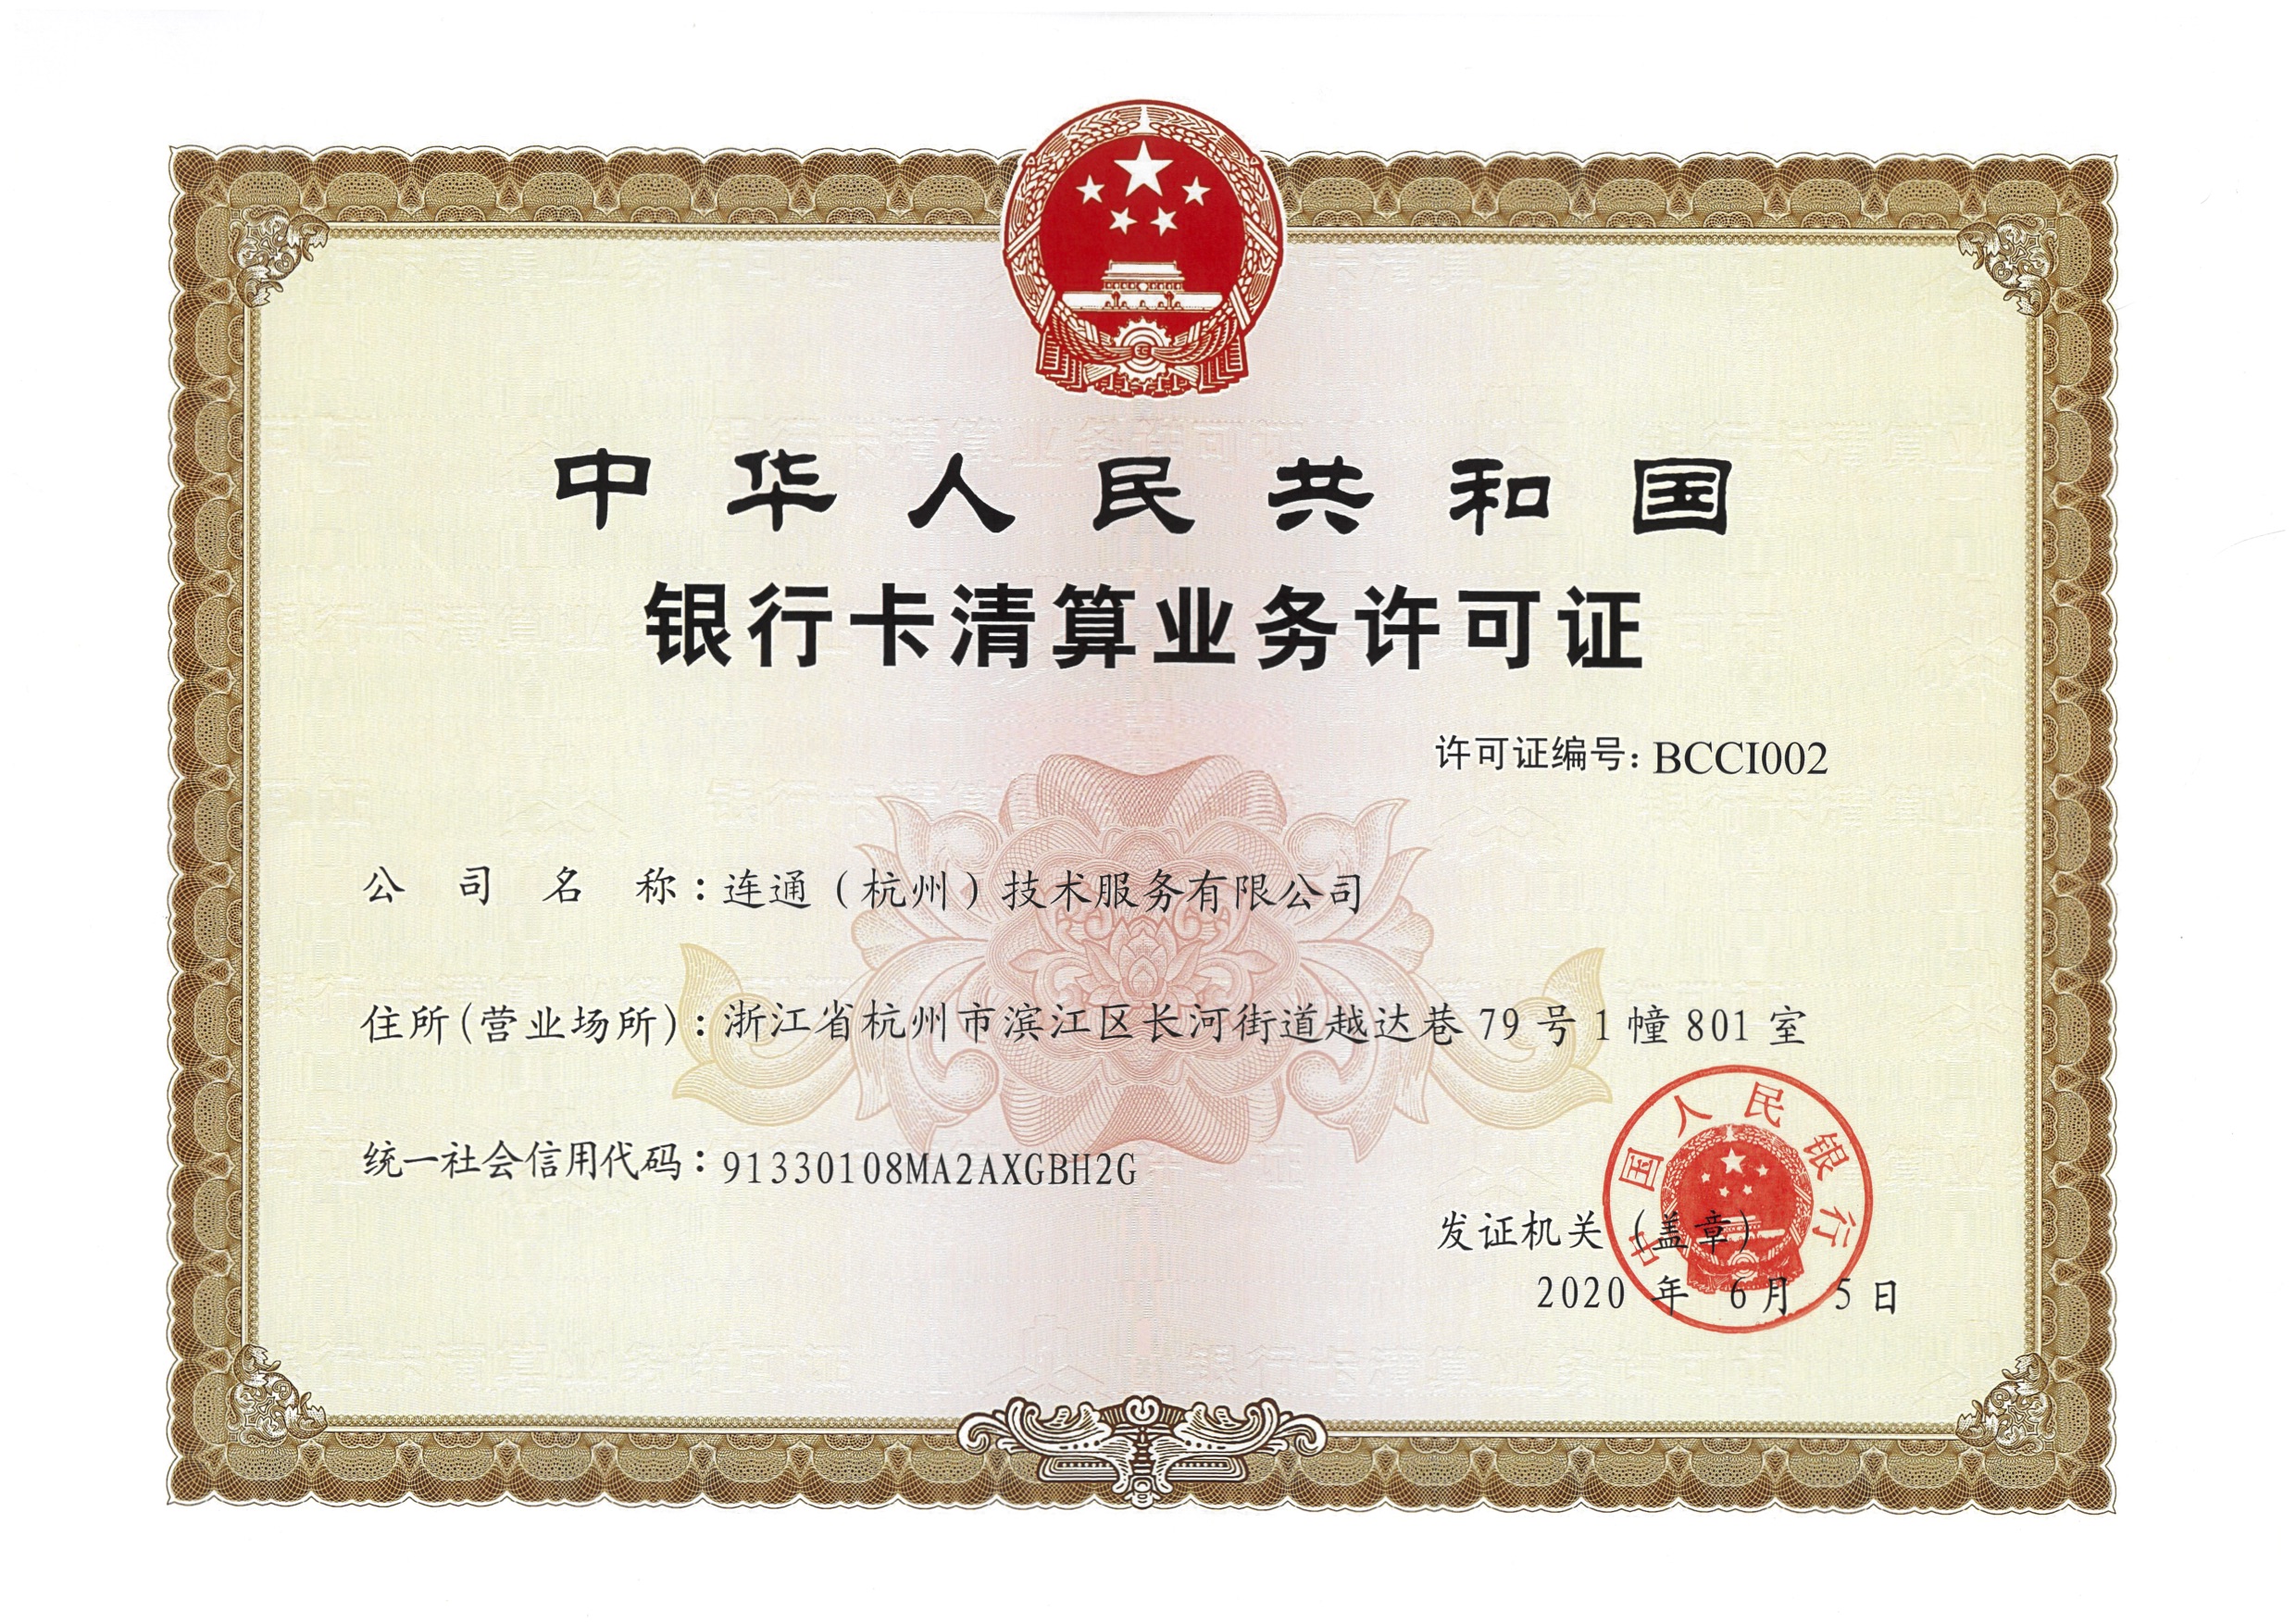 中国人民银行清算业务许可证